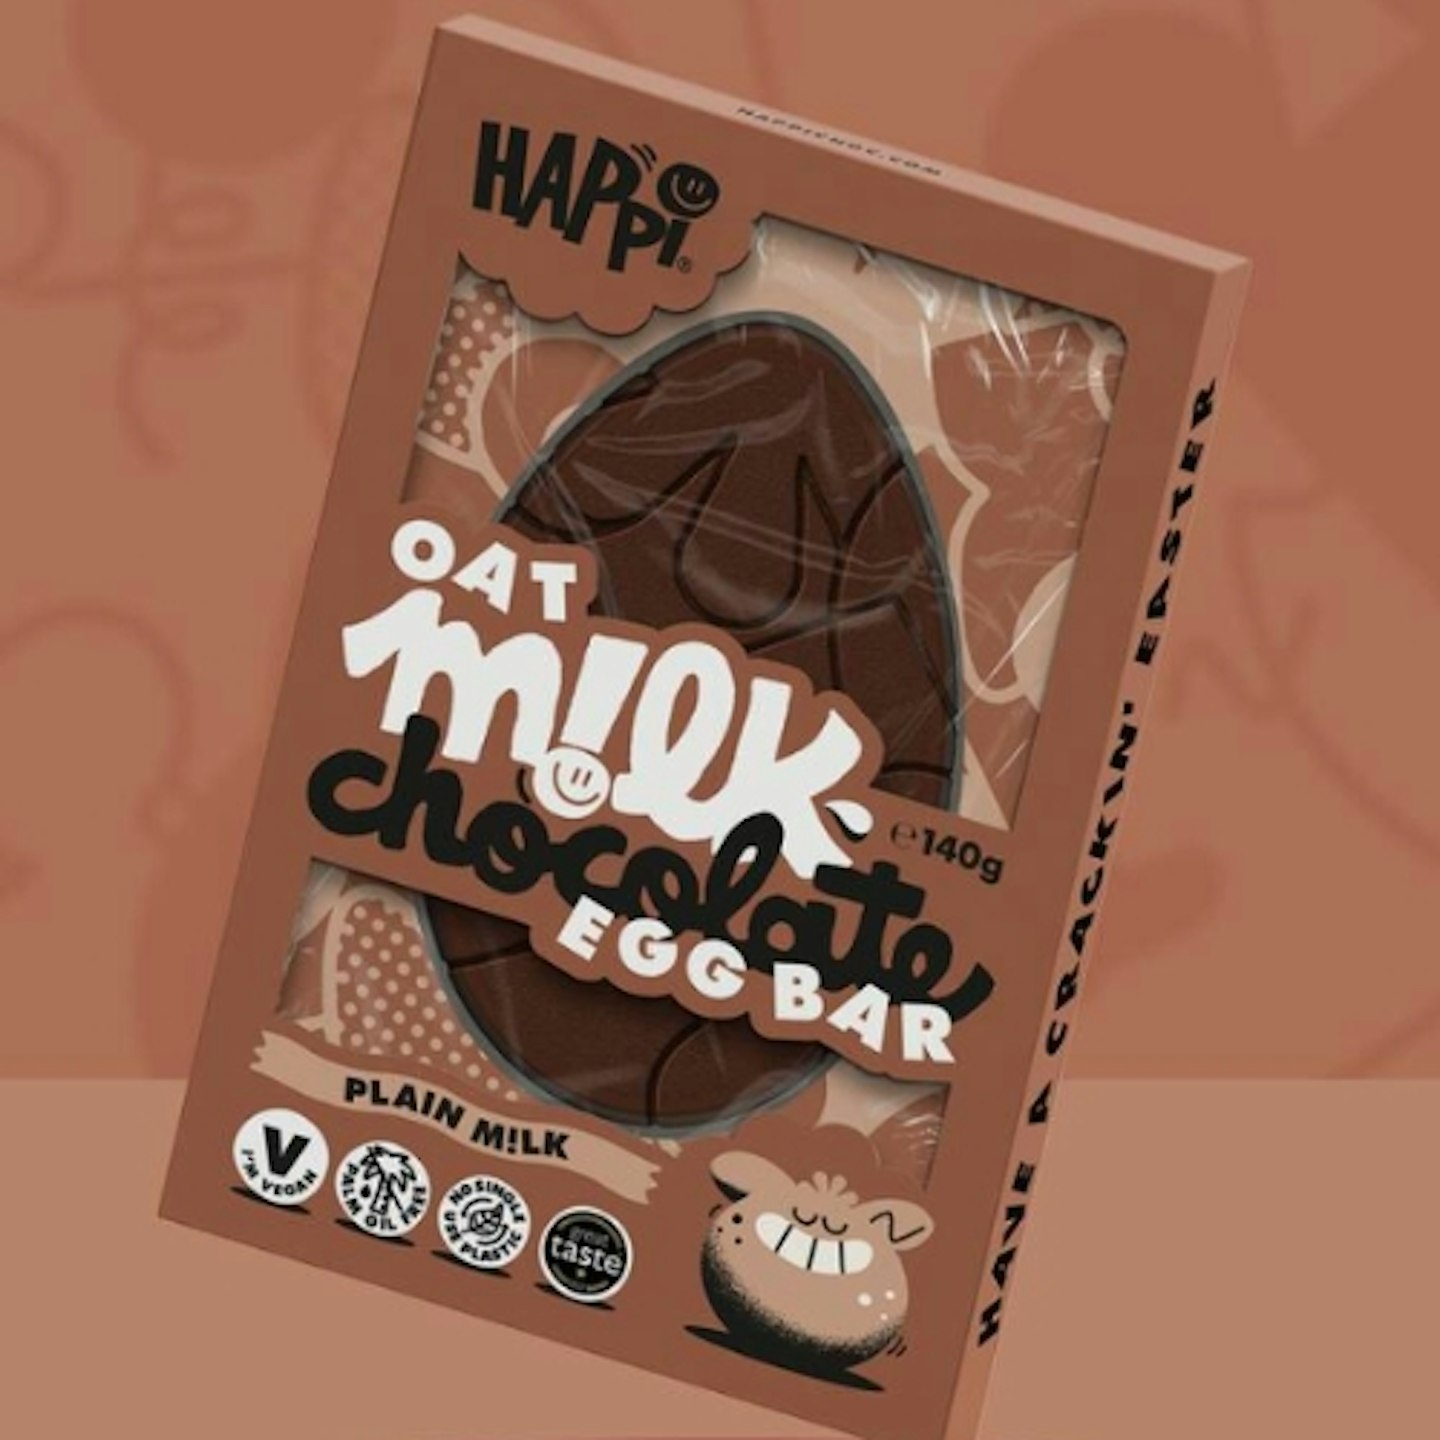 Happi Oat M!Lk Plain Chocolate Easter Egg Bar 140g